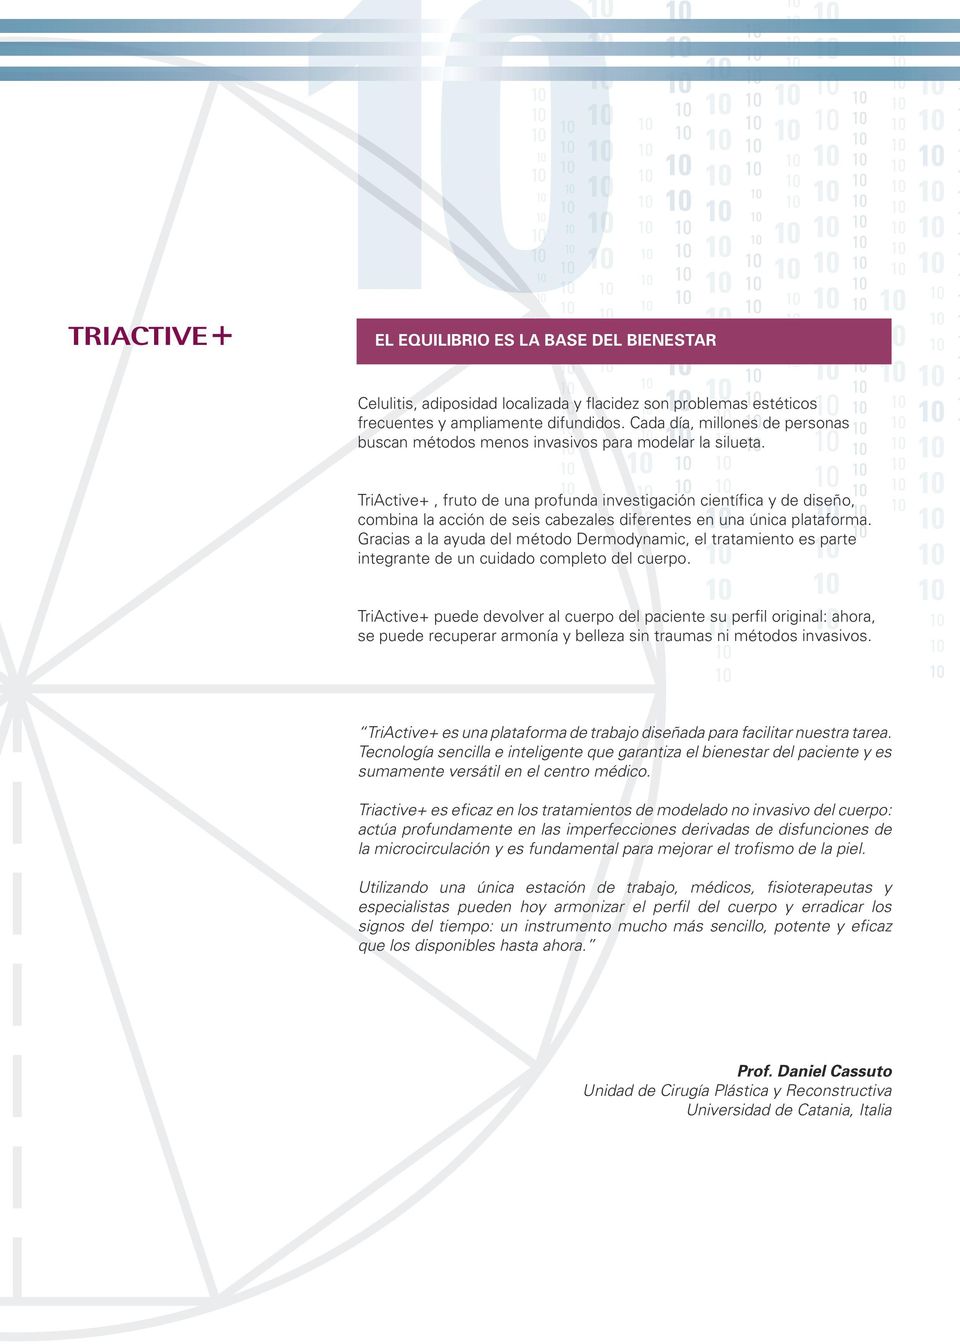 TriActive+, fruto de una profunda investigación científica y de diseño, combina la acción de seis cabezales diferentes en una única plataforma.